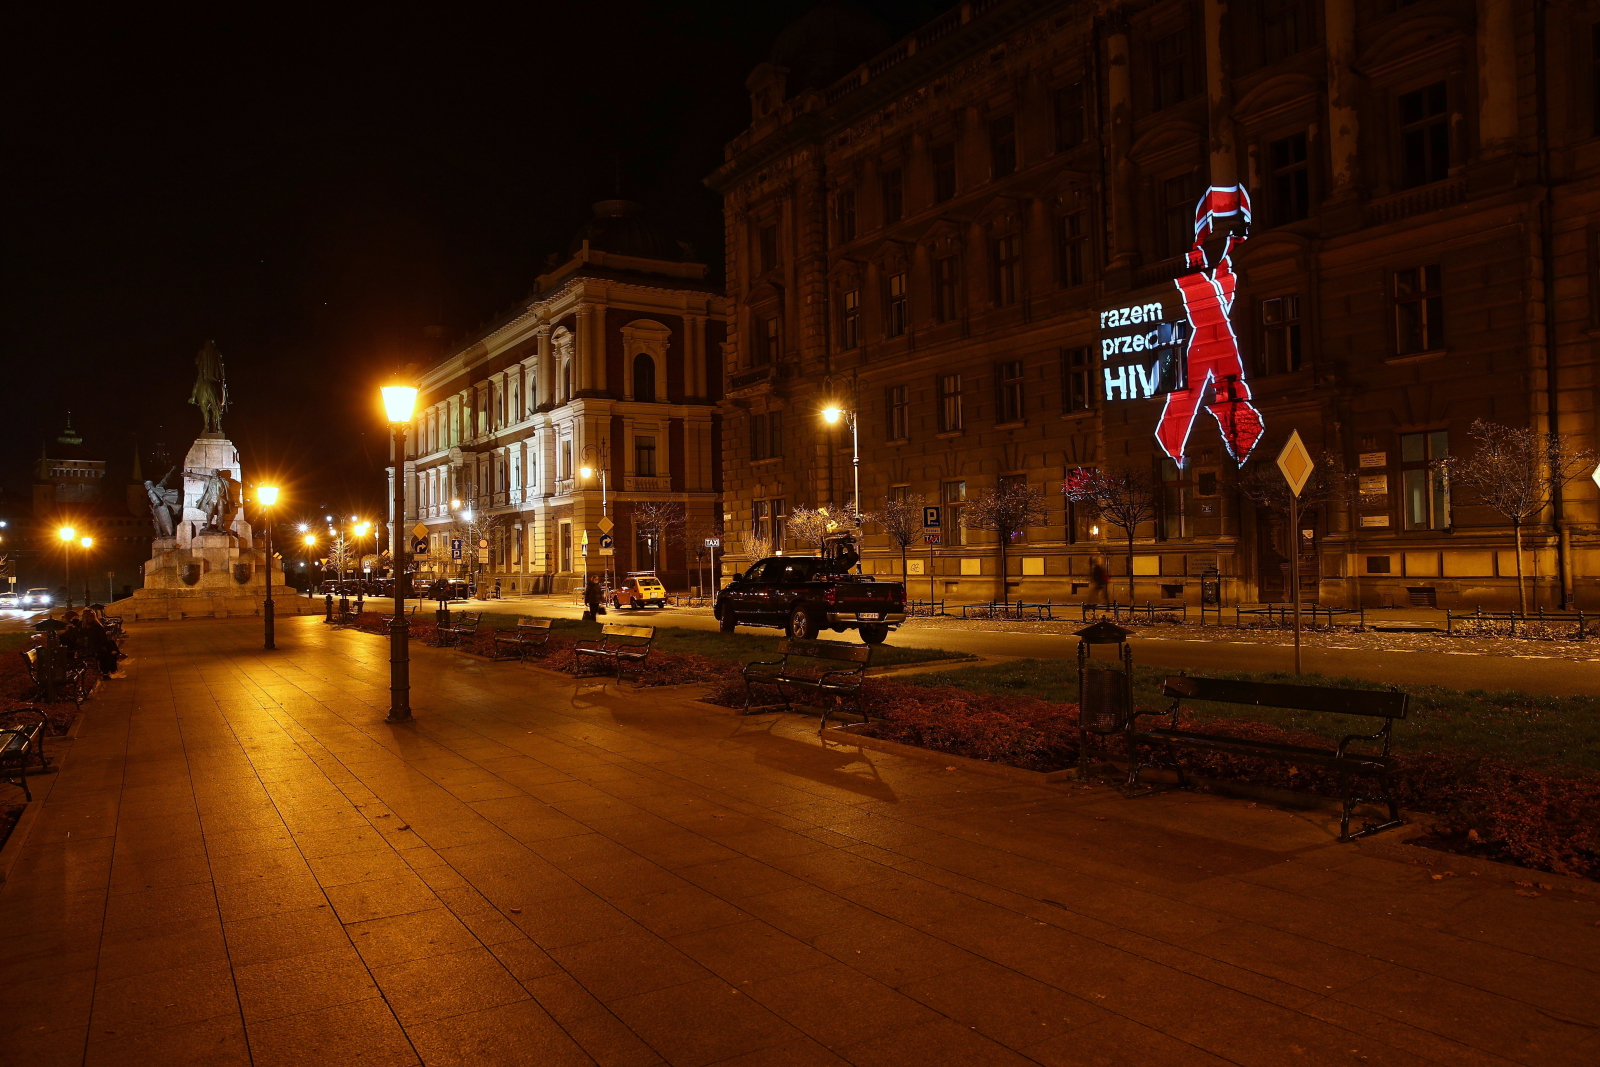 Iluminacje na fasadach budynków w Krakowie, zaprezentowane 20 bm. w ramach akcji społecznej 